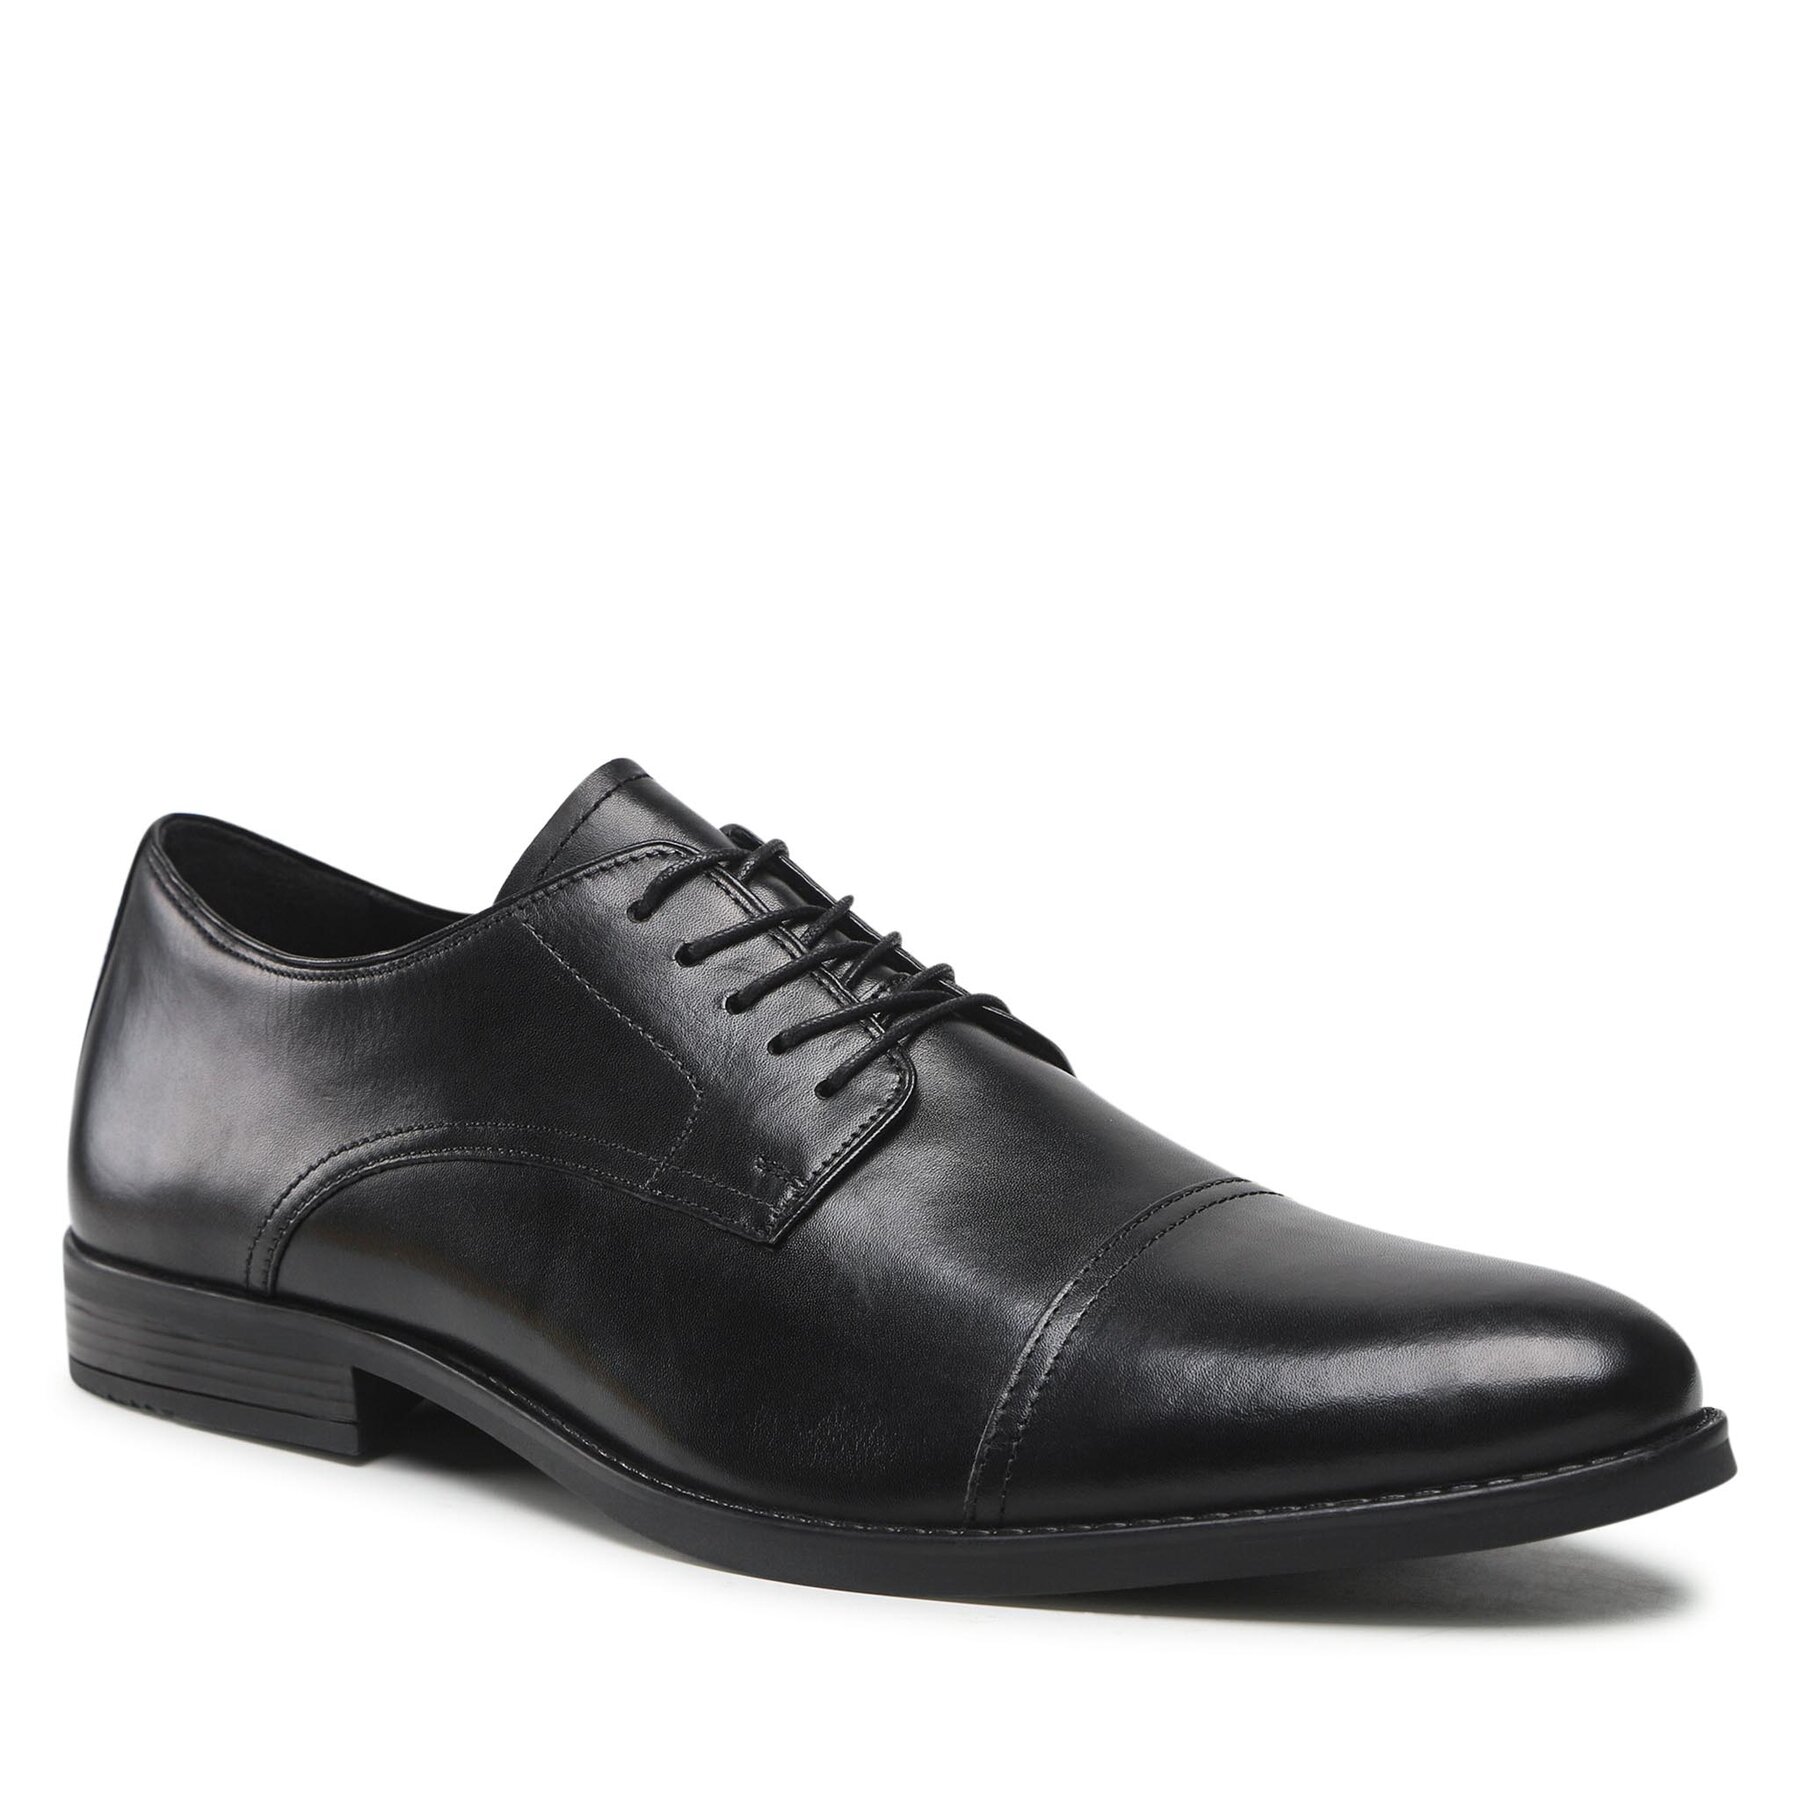 Pantofi Lasocki KRONE2-13BIG MI08 Black Black